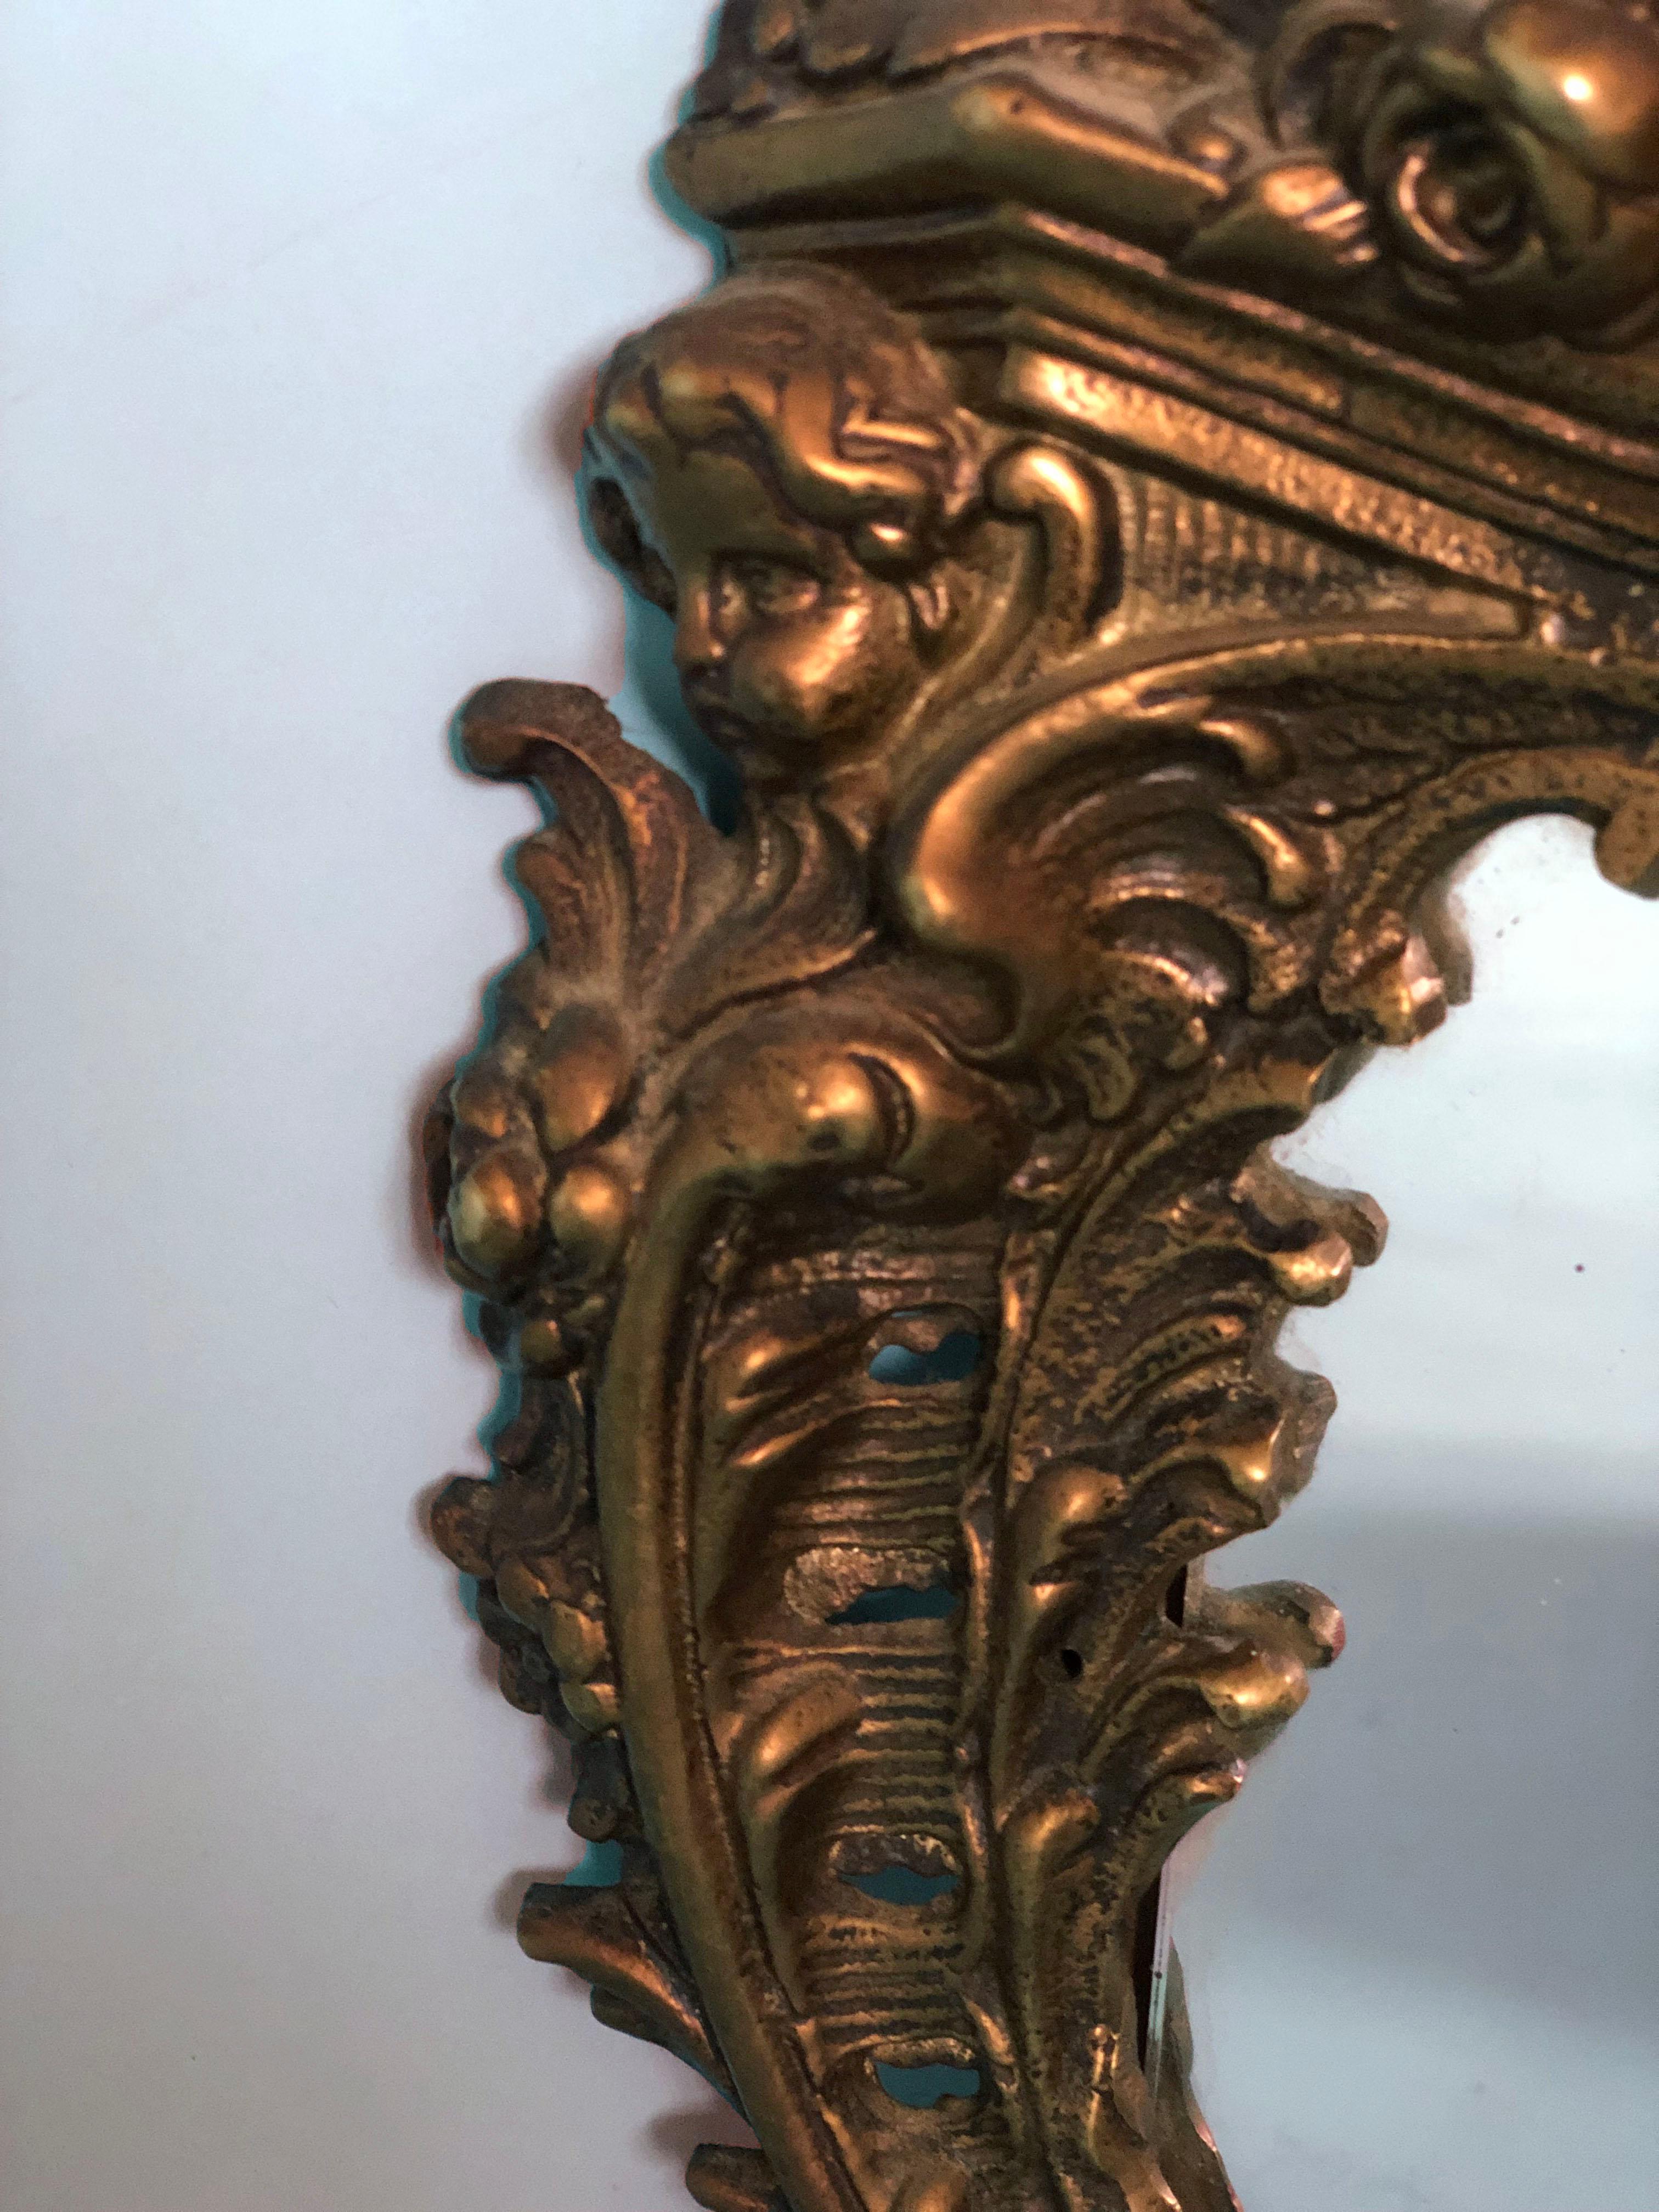 Ein detailreicher goldener Tischspiegel im Rokoko-Stil. Dieser antike Bronzespiegel steht auf 2 Beinen und hat einen Puttenkopf an der Seite.

Wunderschön verwitterter Spiegel In gutem Zustand. Frankreich, Ende 19. Jahrhundert.

Objekt: